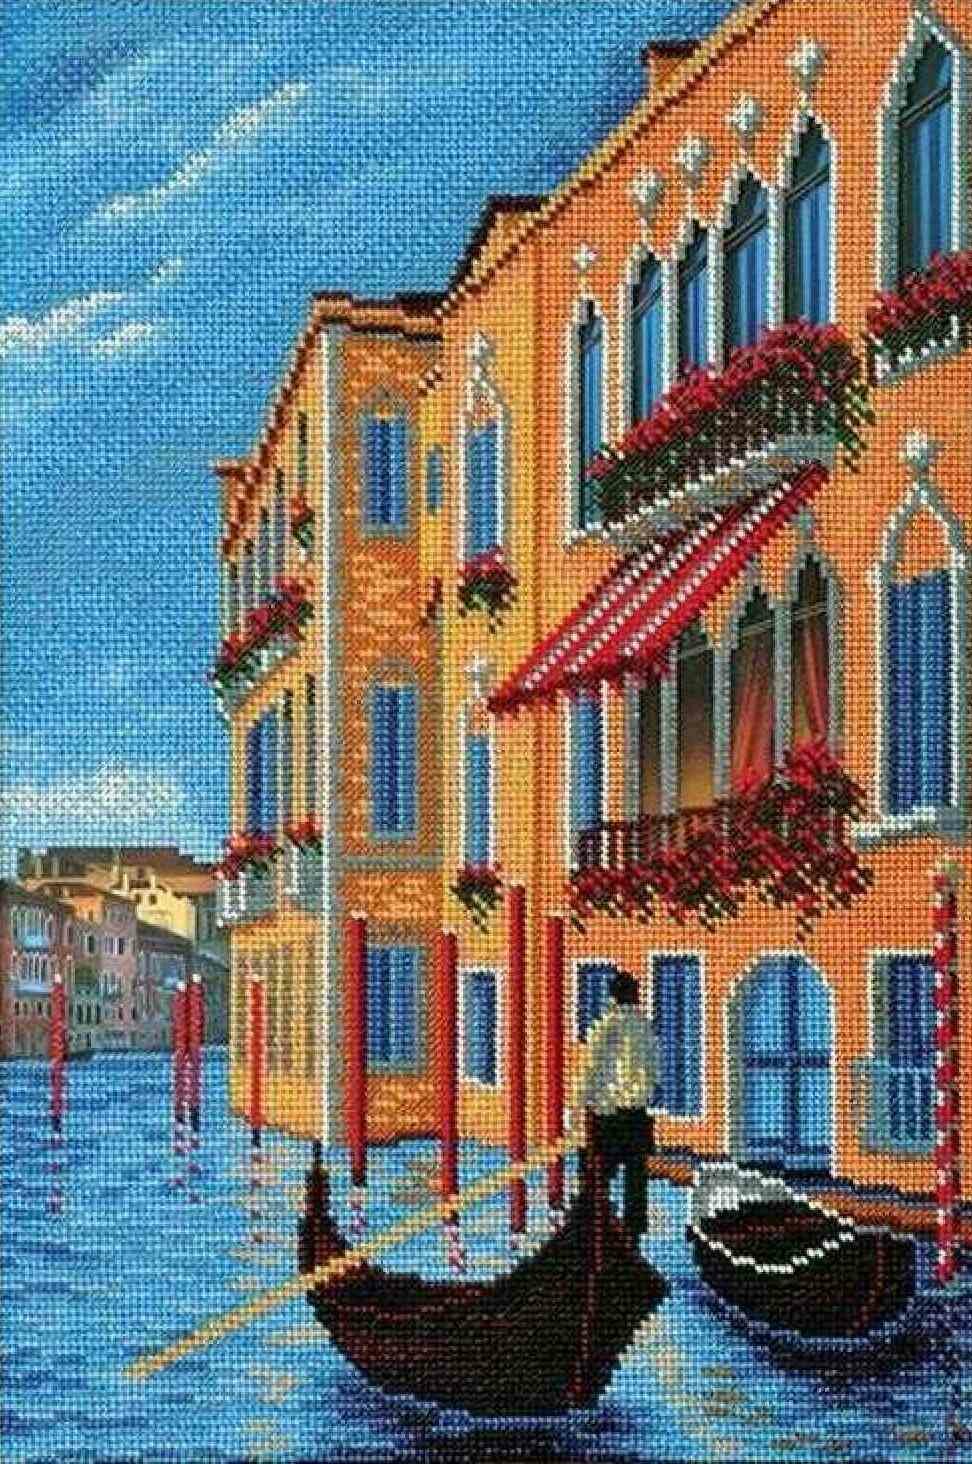 Набор для вышивания бисером радуга бисера(кроше) Гранд-Канал. Венеция, 26*38см